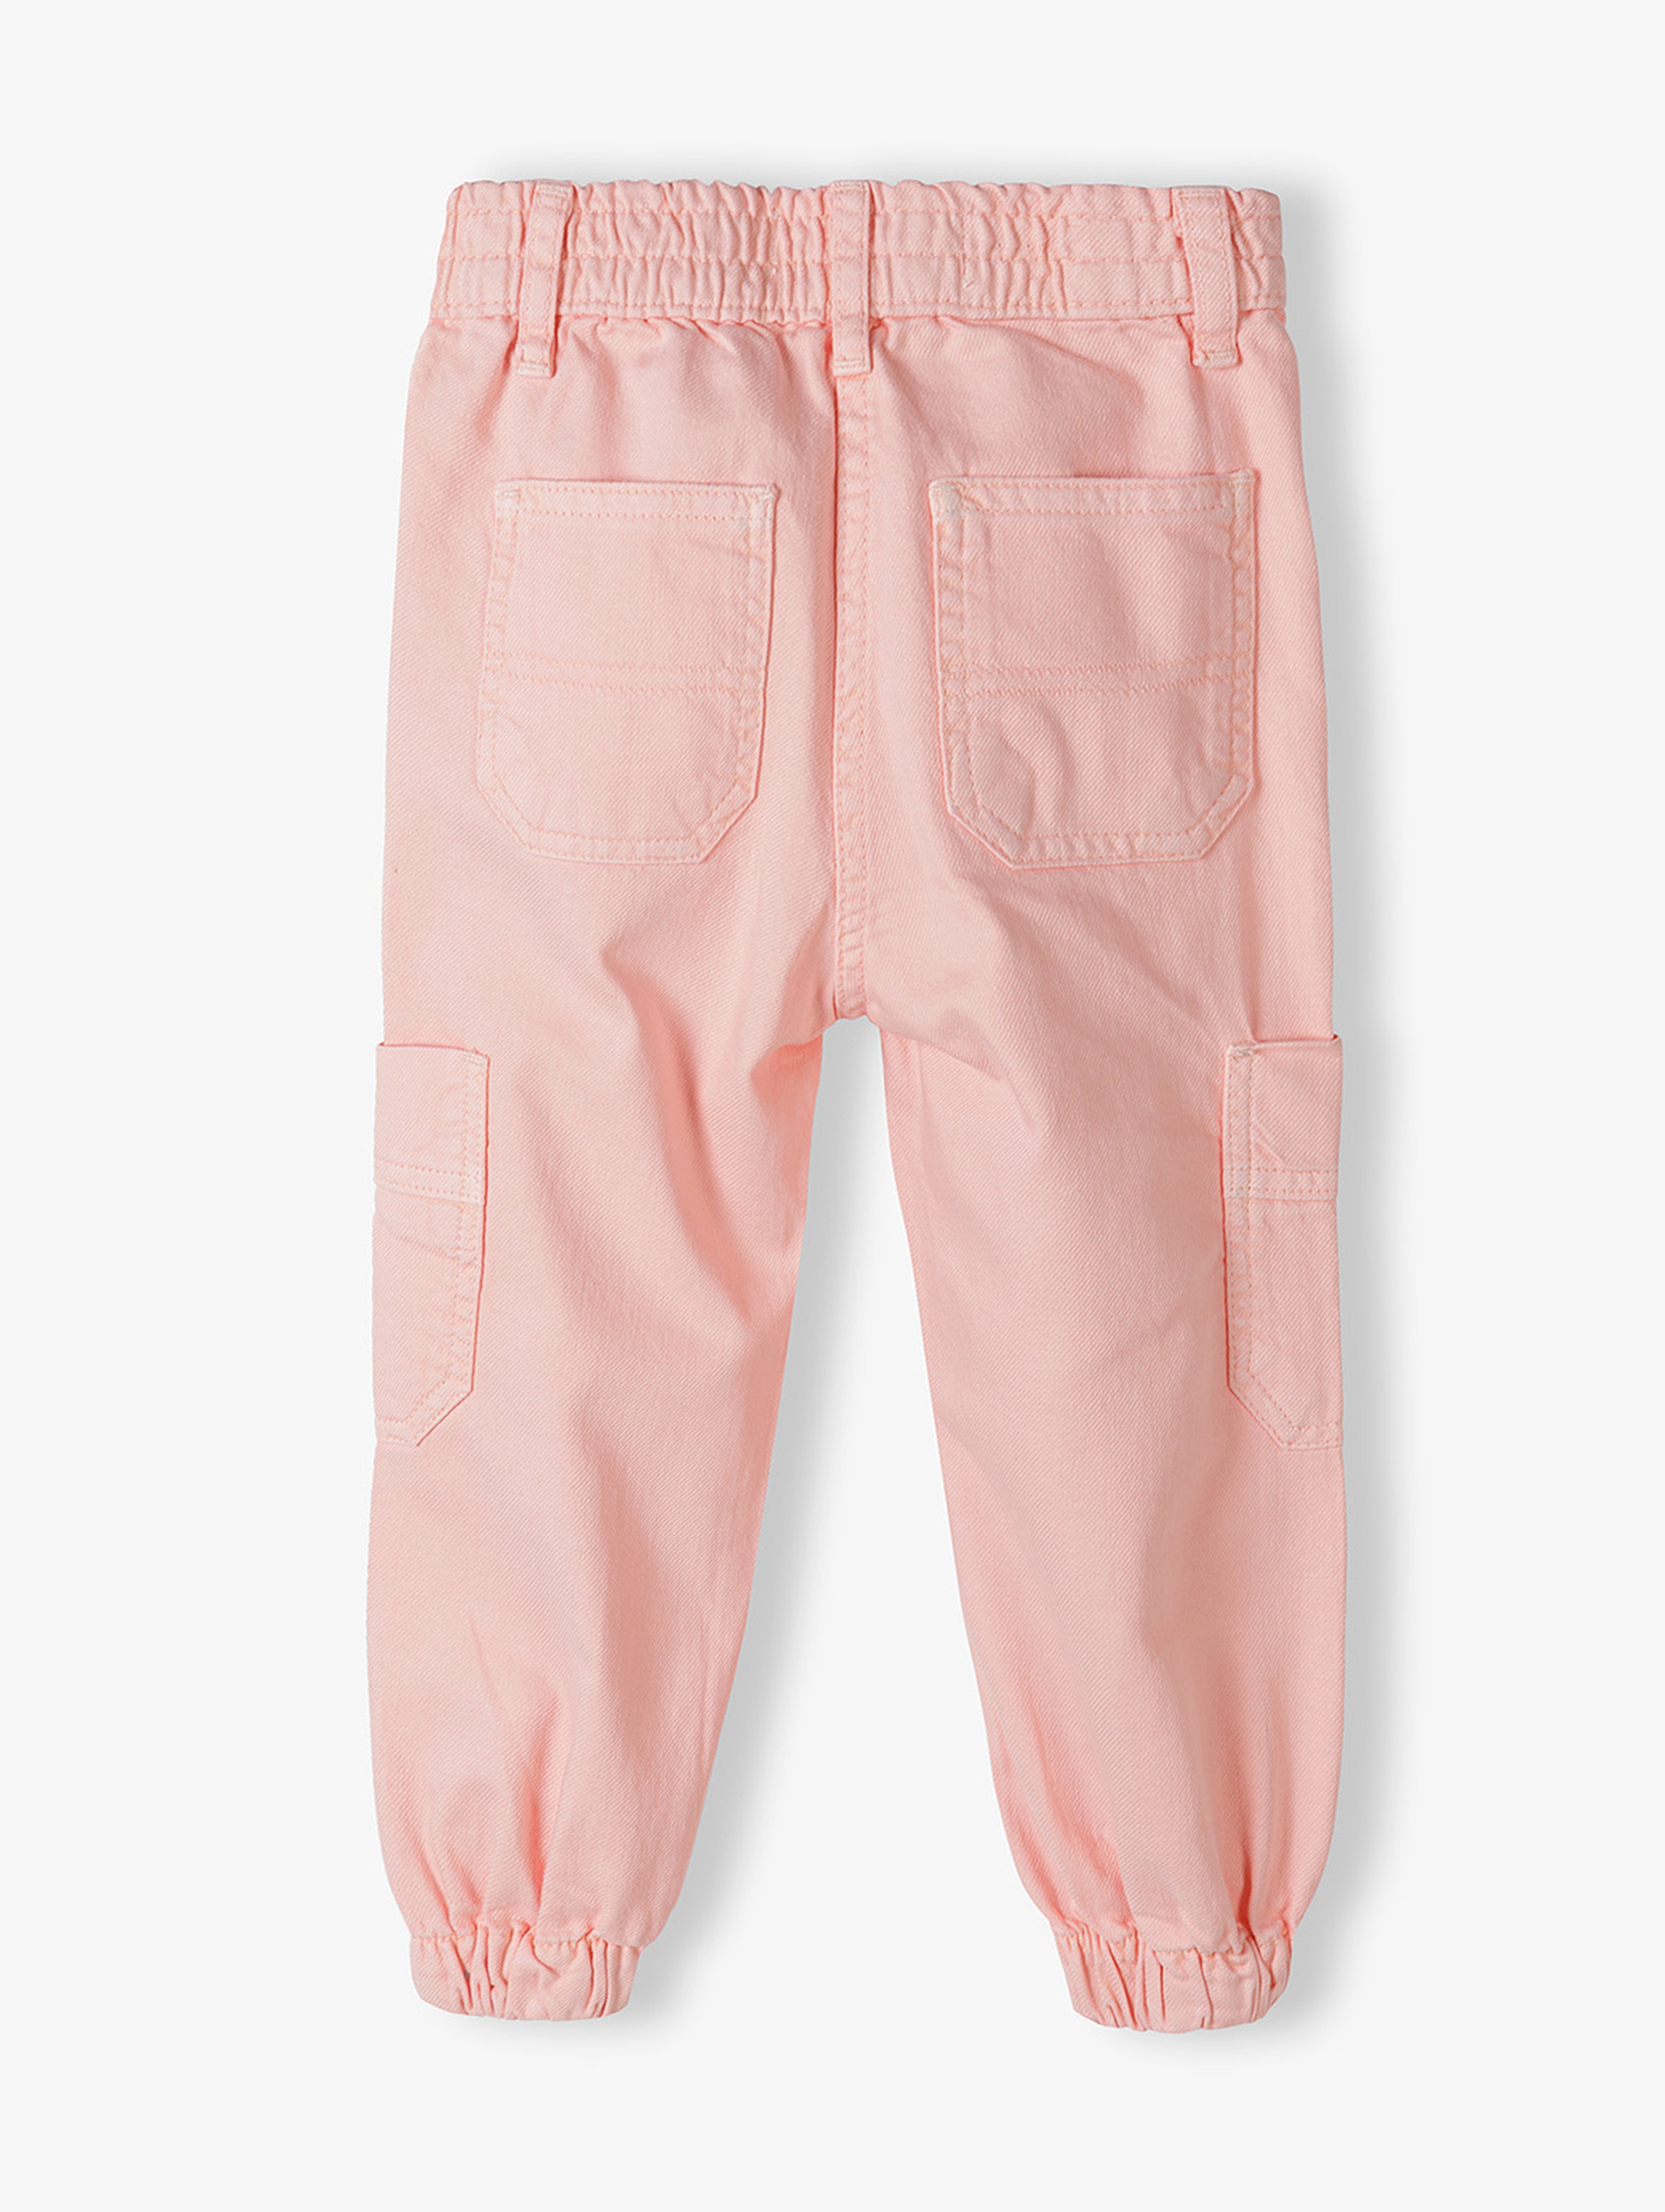 Spodnie typu bojówki dla niemowlaka różowe